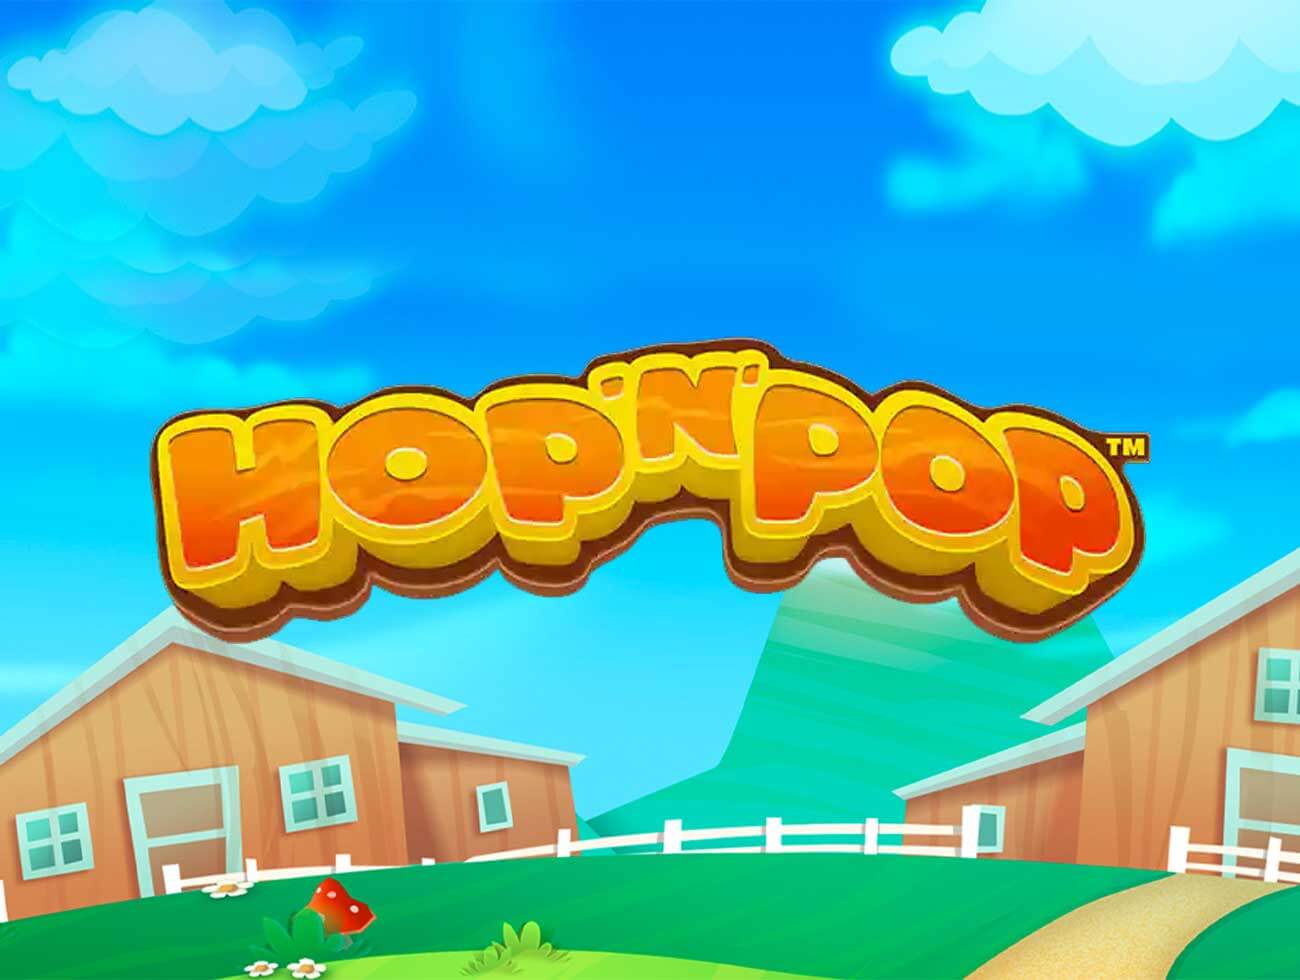 Hop’n’pop